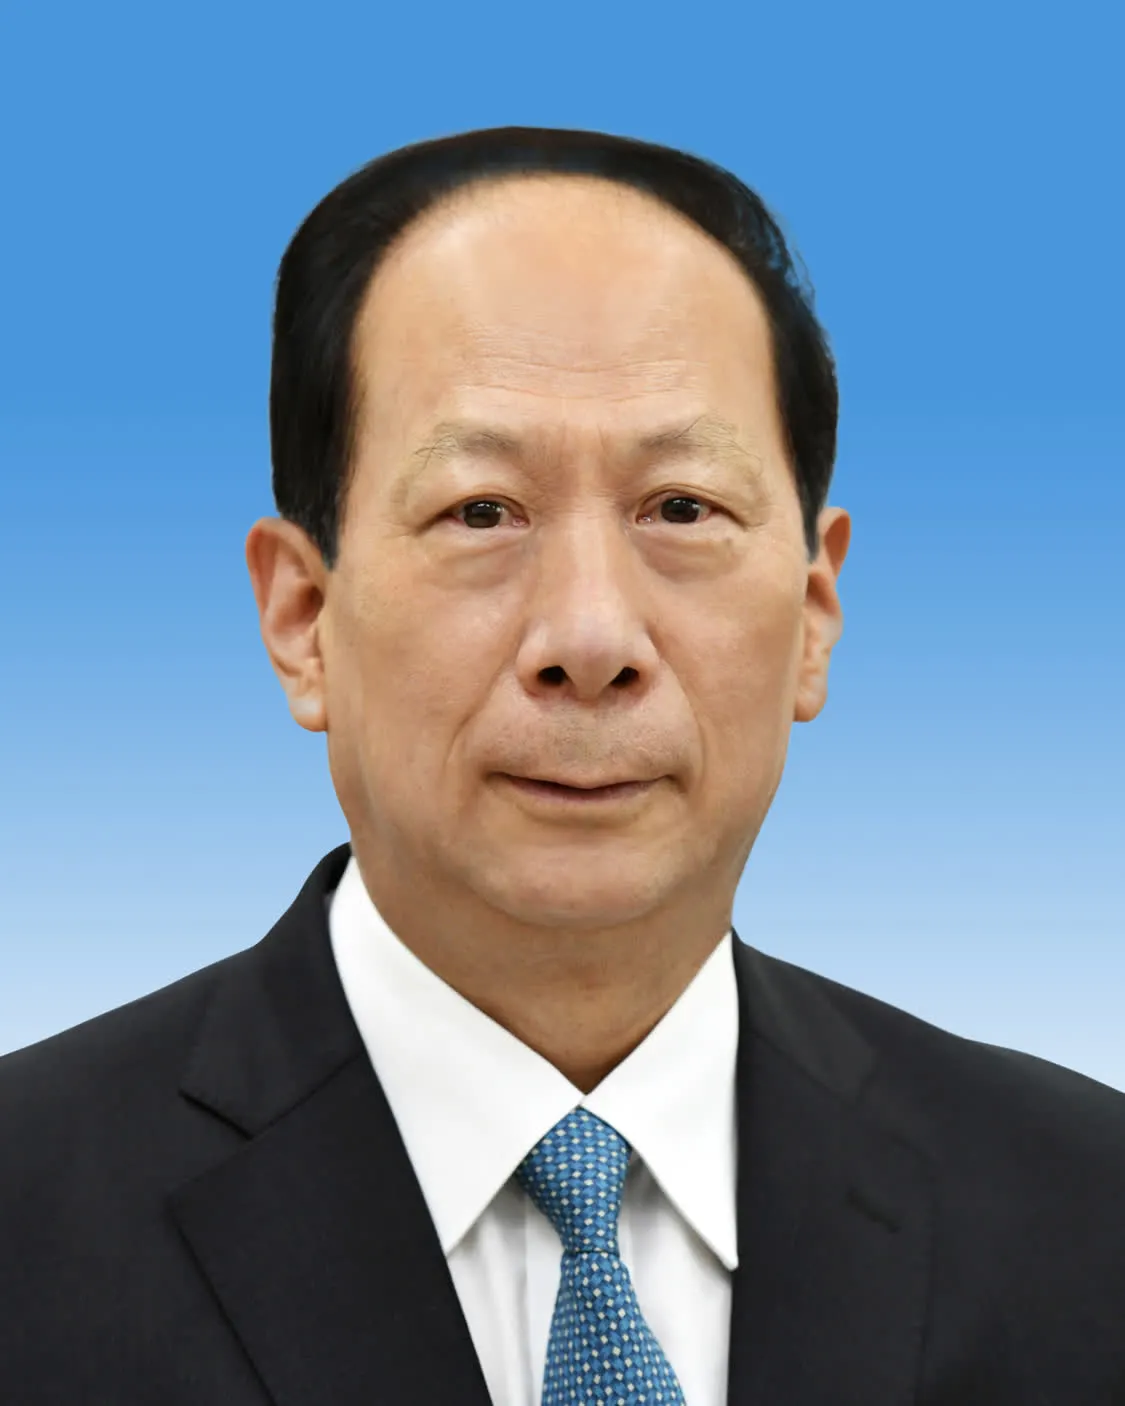 中国人民政治协商会议第十四届全国委员会副主席石泰峰